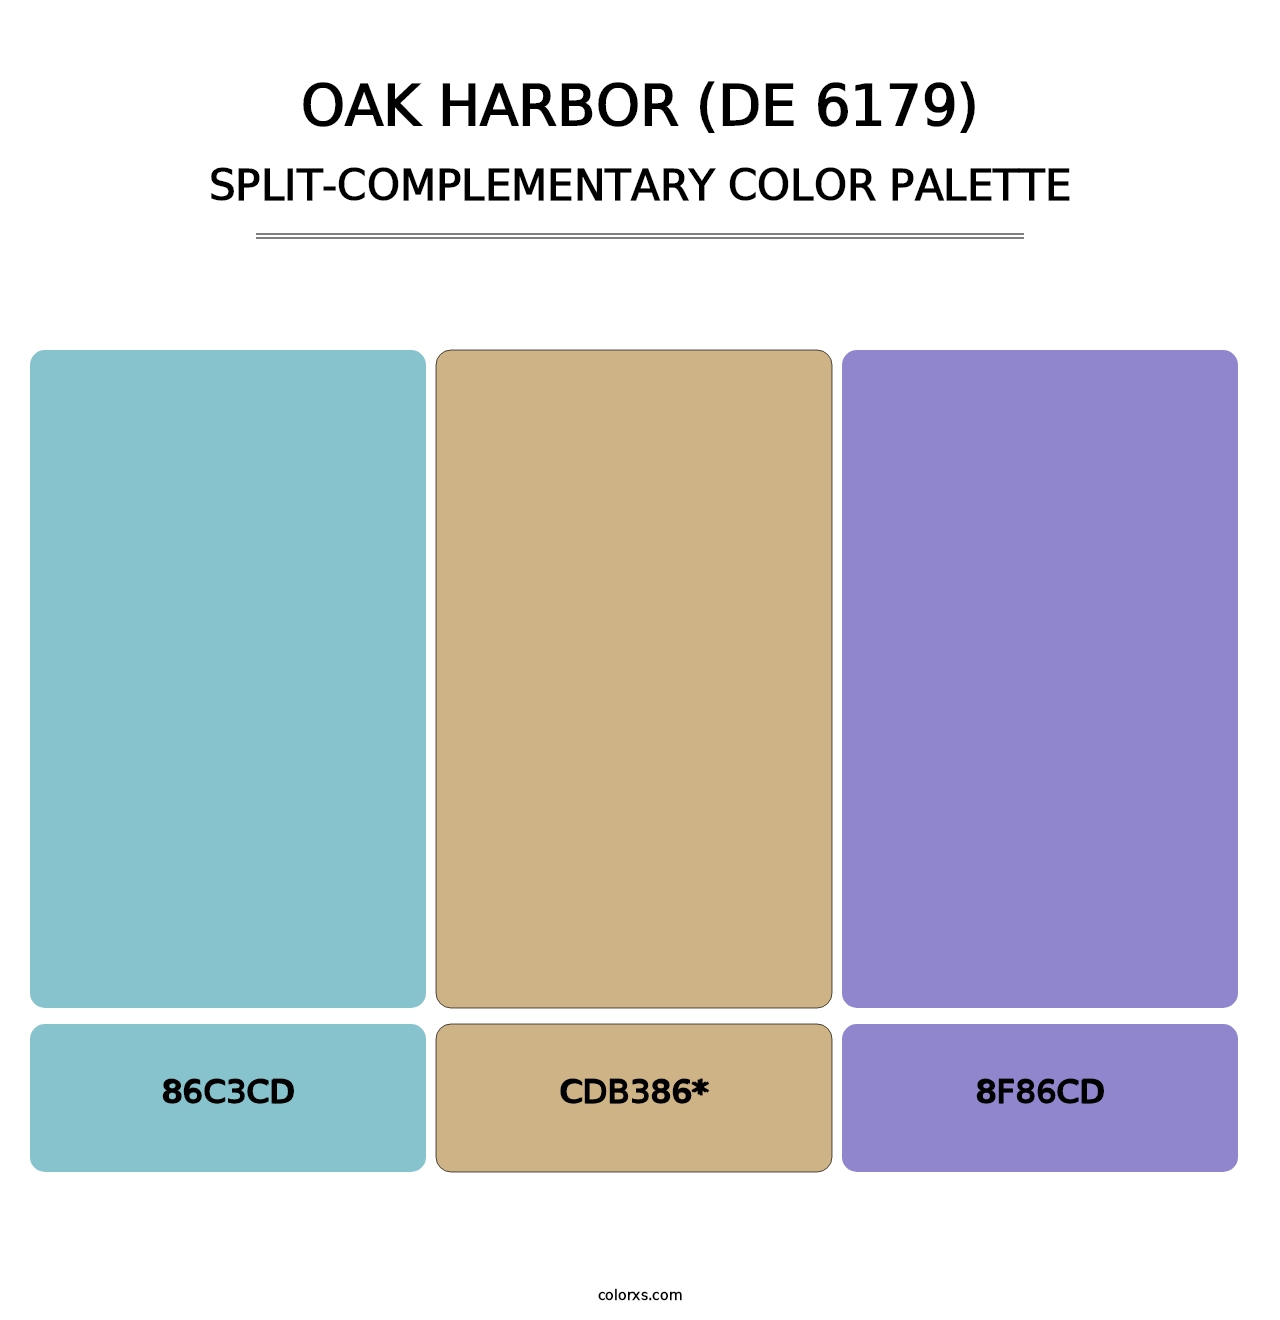 Oak Harbor (DE 6179) - Split-Complementary Color Palette